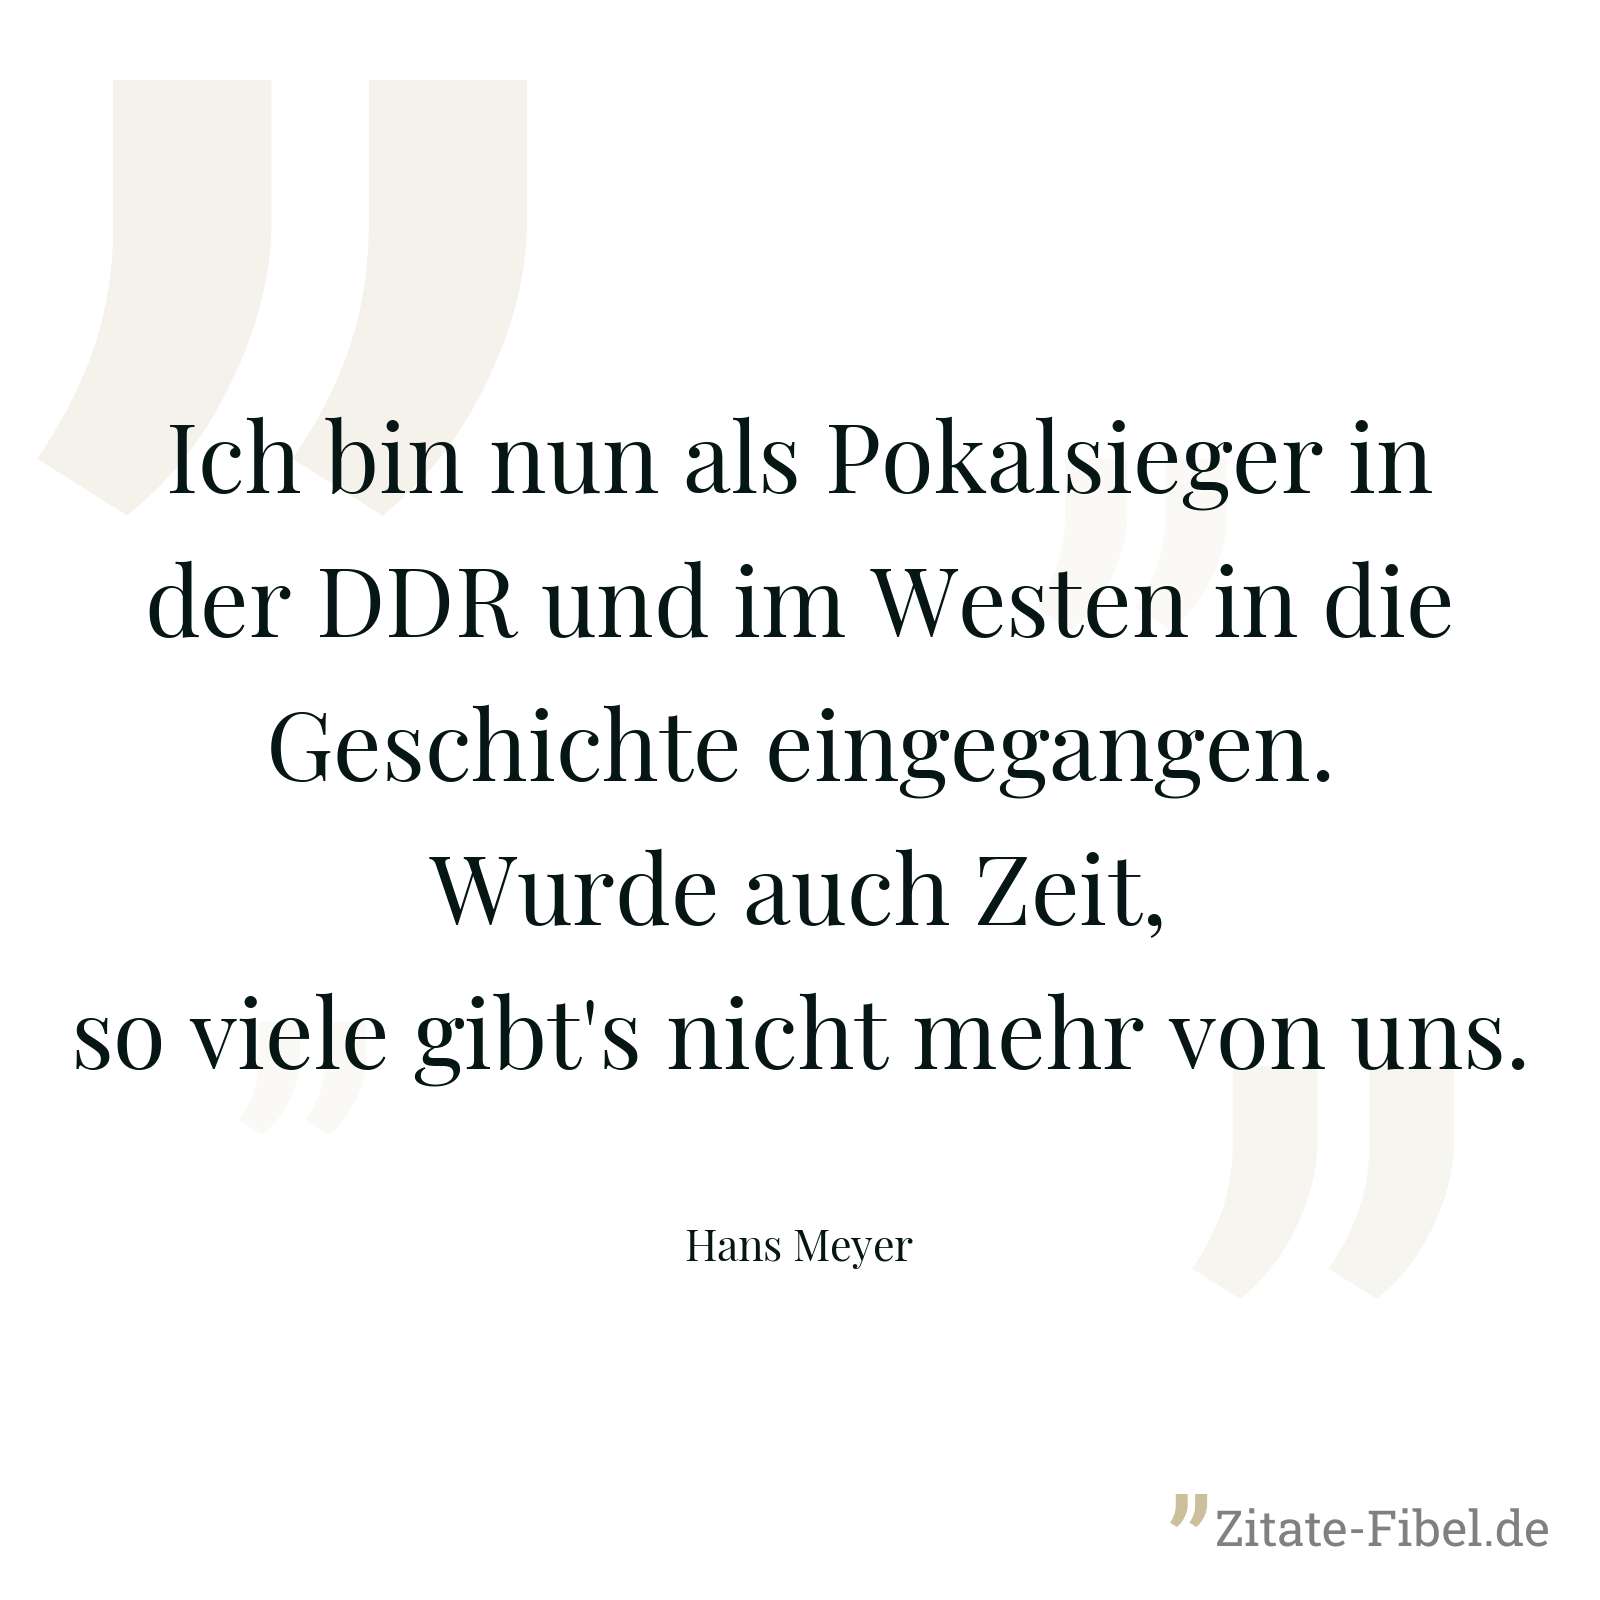 Ich bin nun als Pokalsieger in der DDR und im Westen in die Geschichte eingegangen. Wurde auch Zeit, so viele gibt's nicht mehr von uns. - Hans Meyer